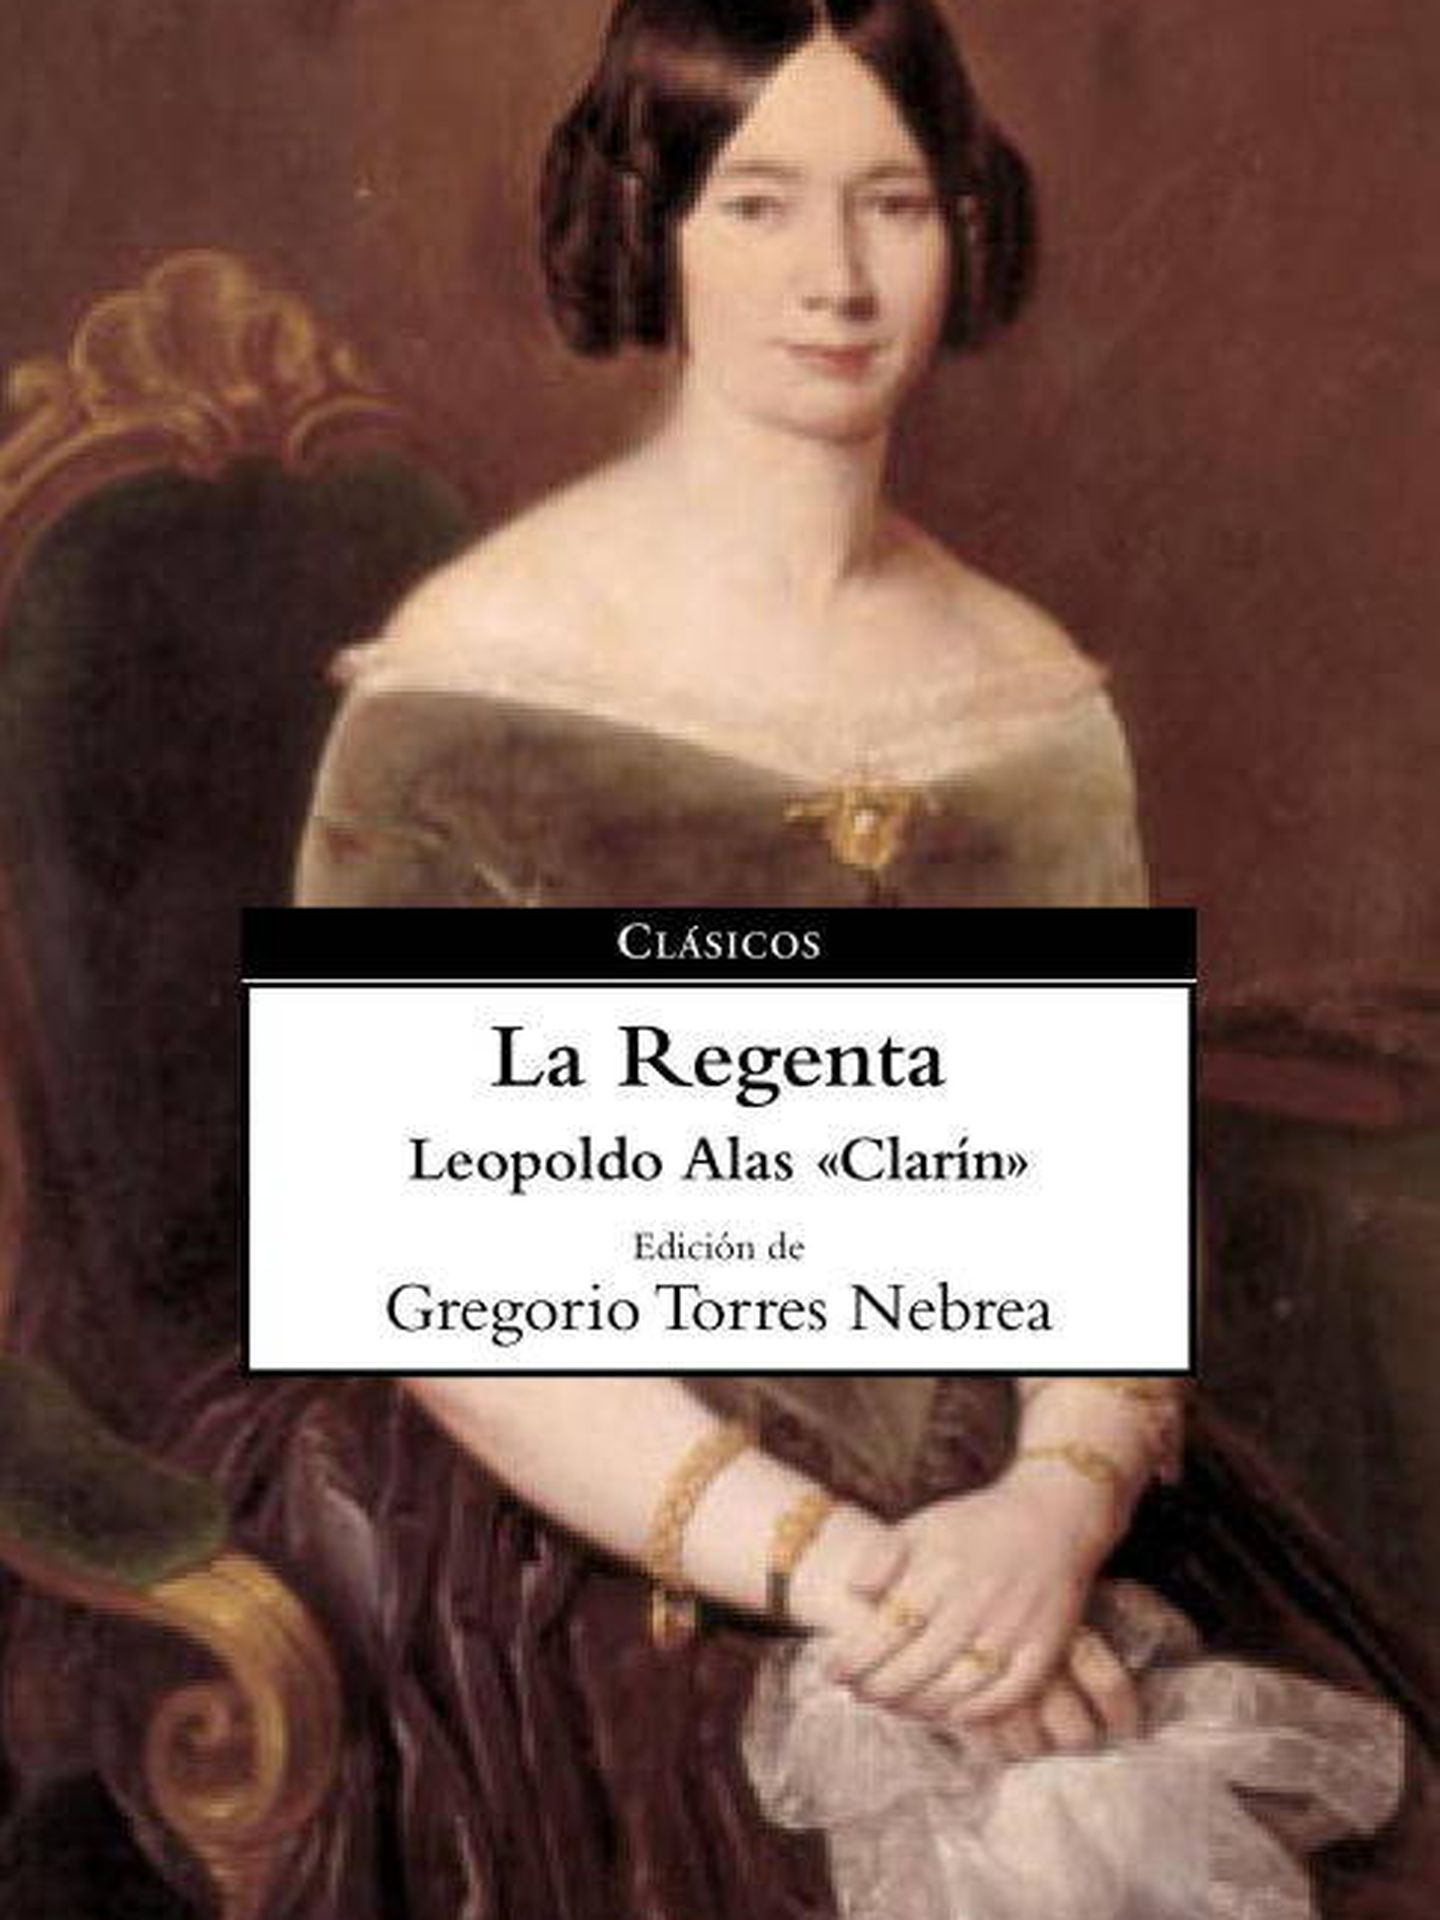 'La Regenta'.